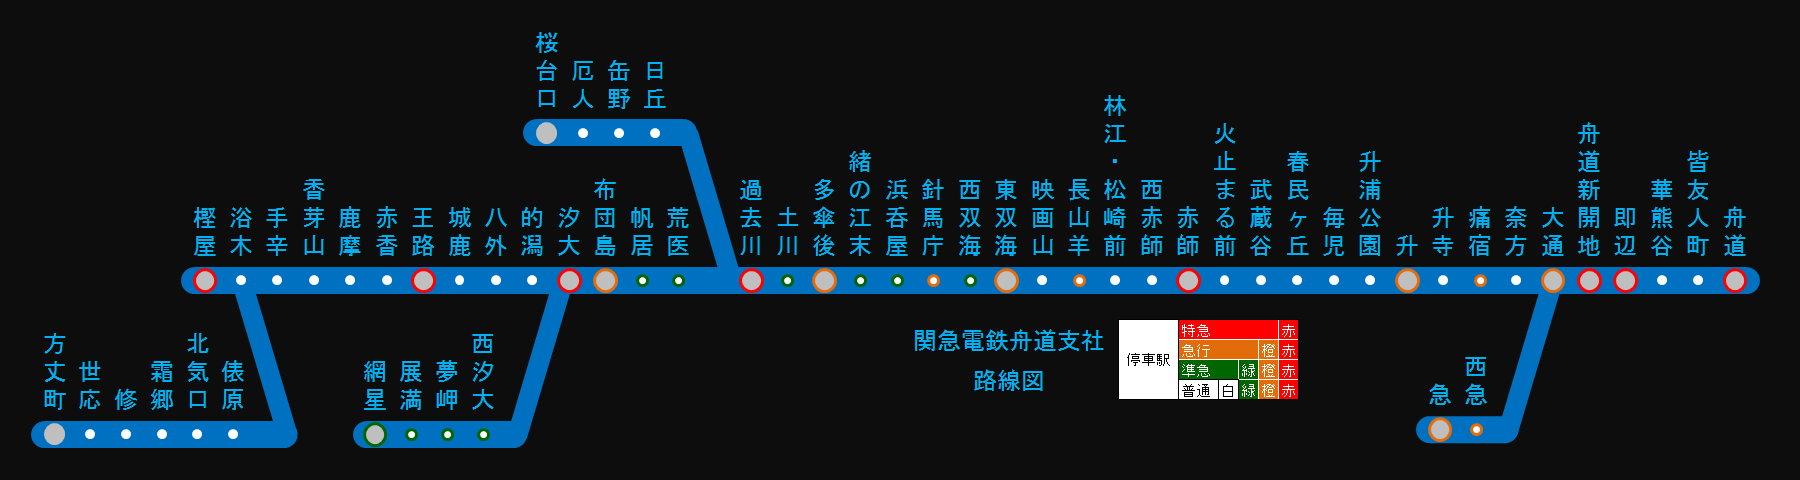 関急舟道支社路線図3.png